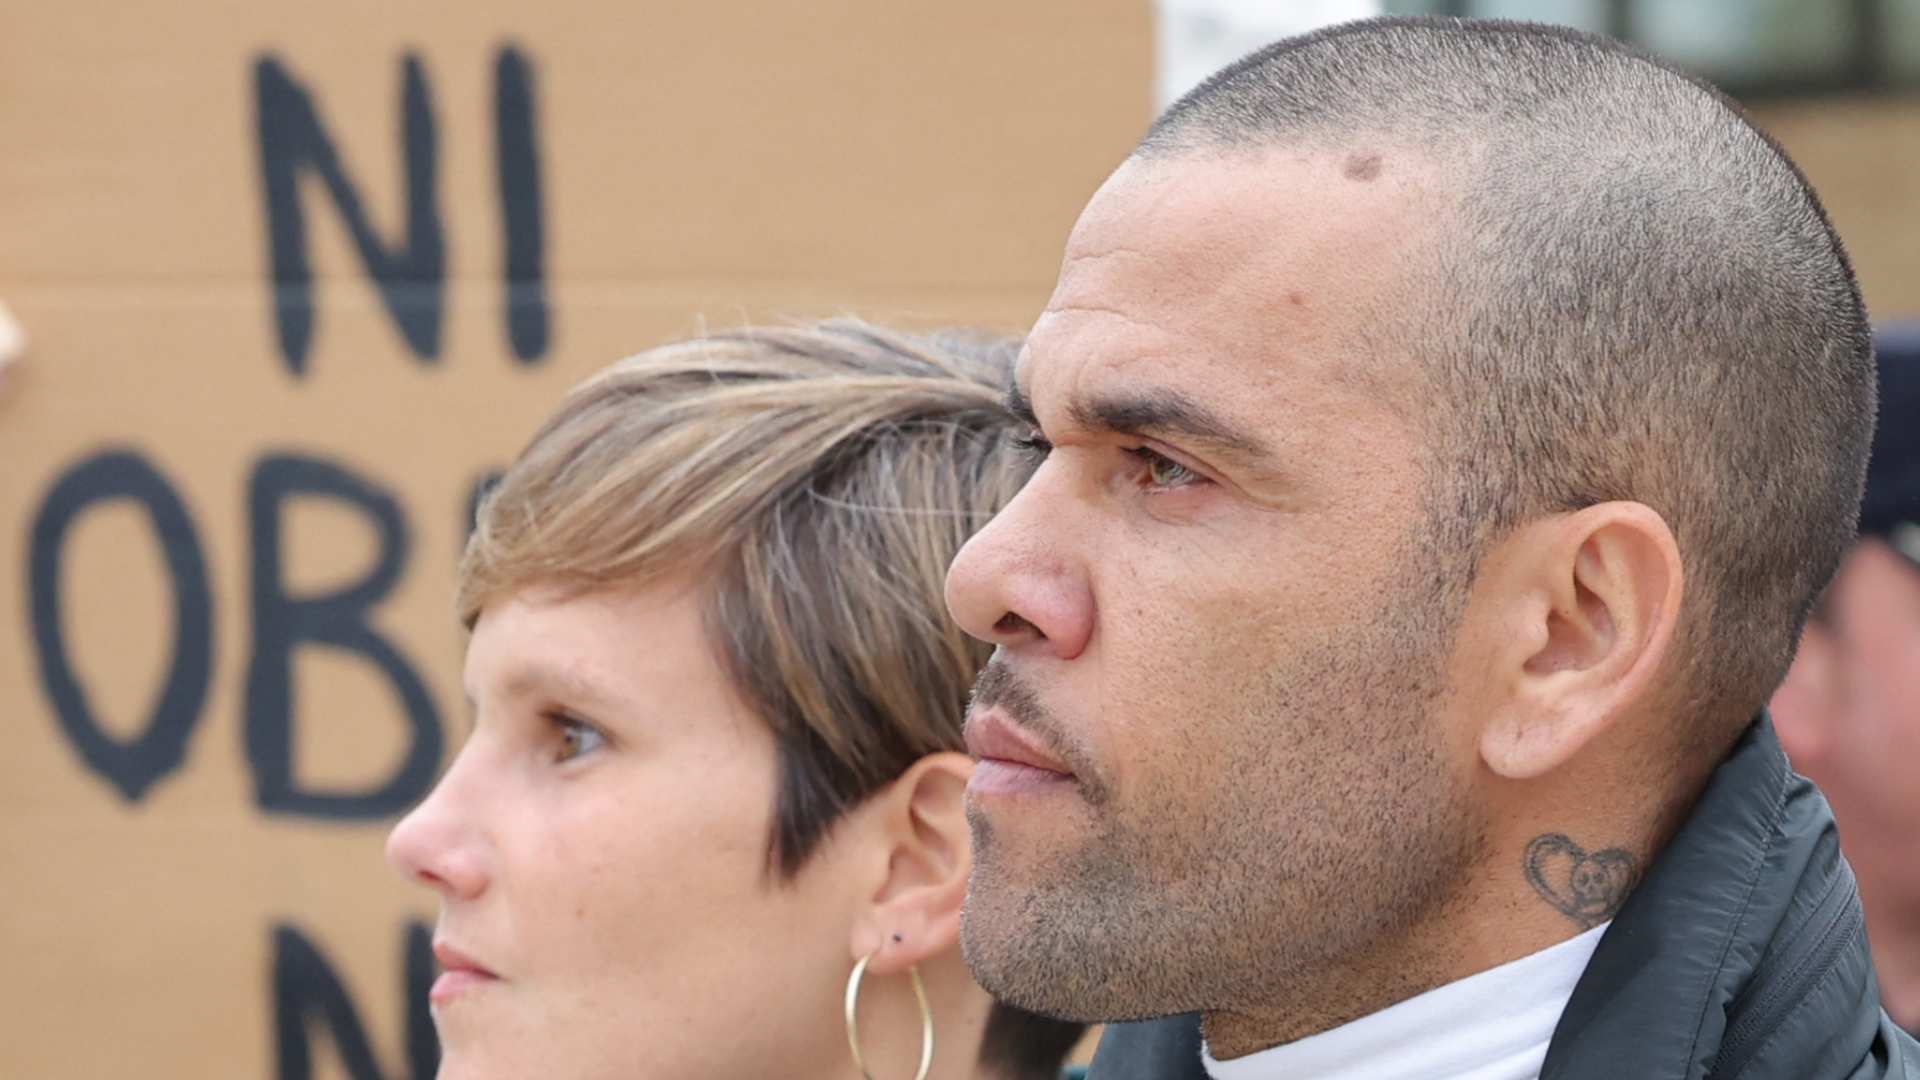 Dani Alves nach Entlassung aus dem Gefängnis: Party bis in die frühen Morgenstunden